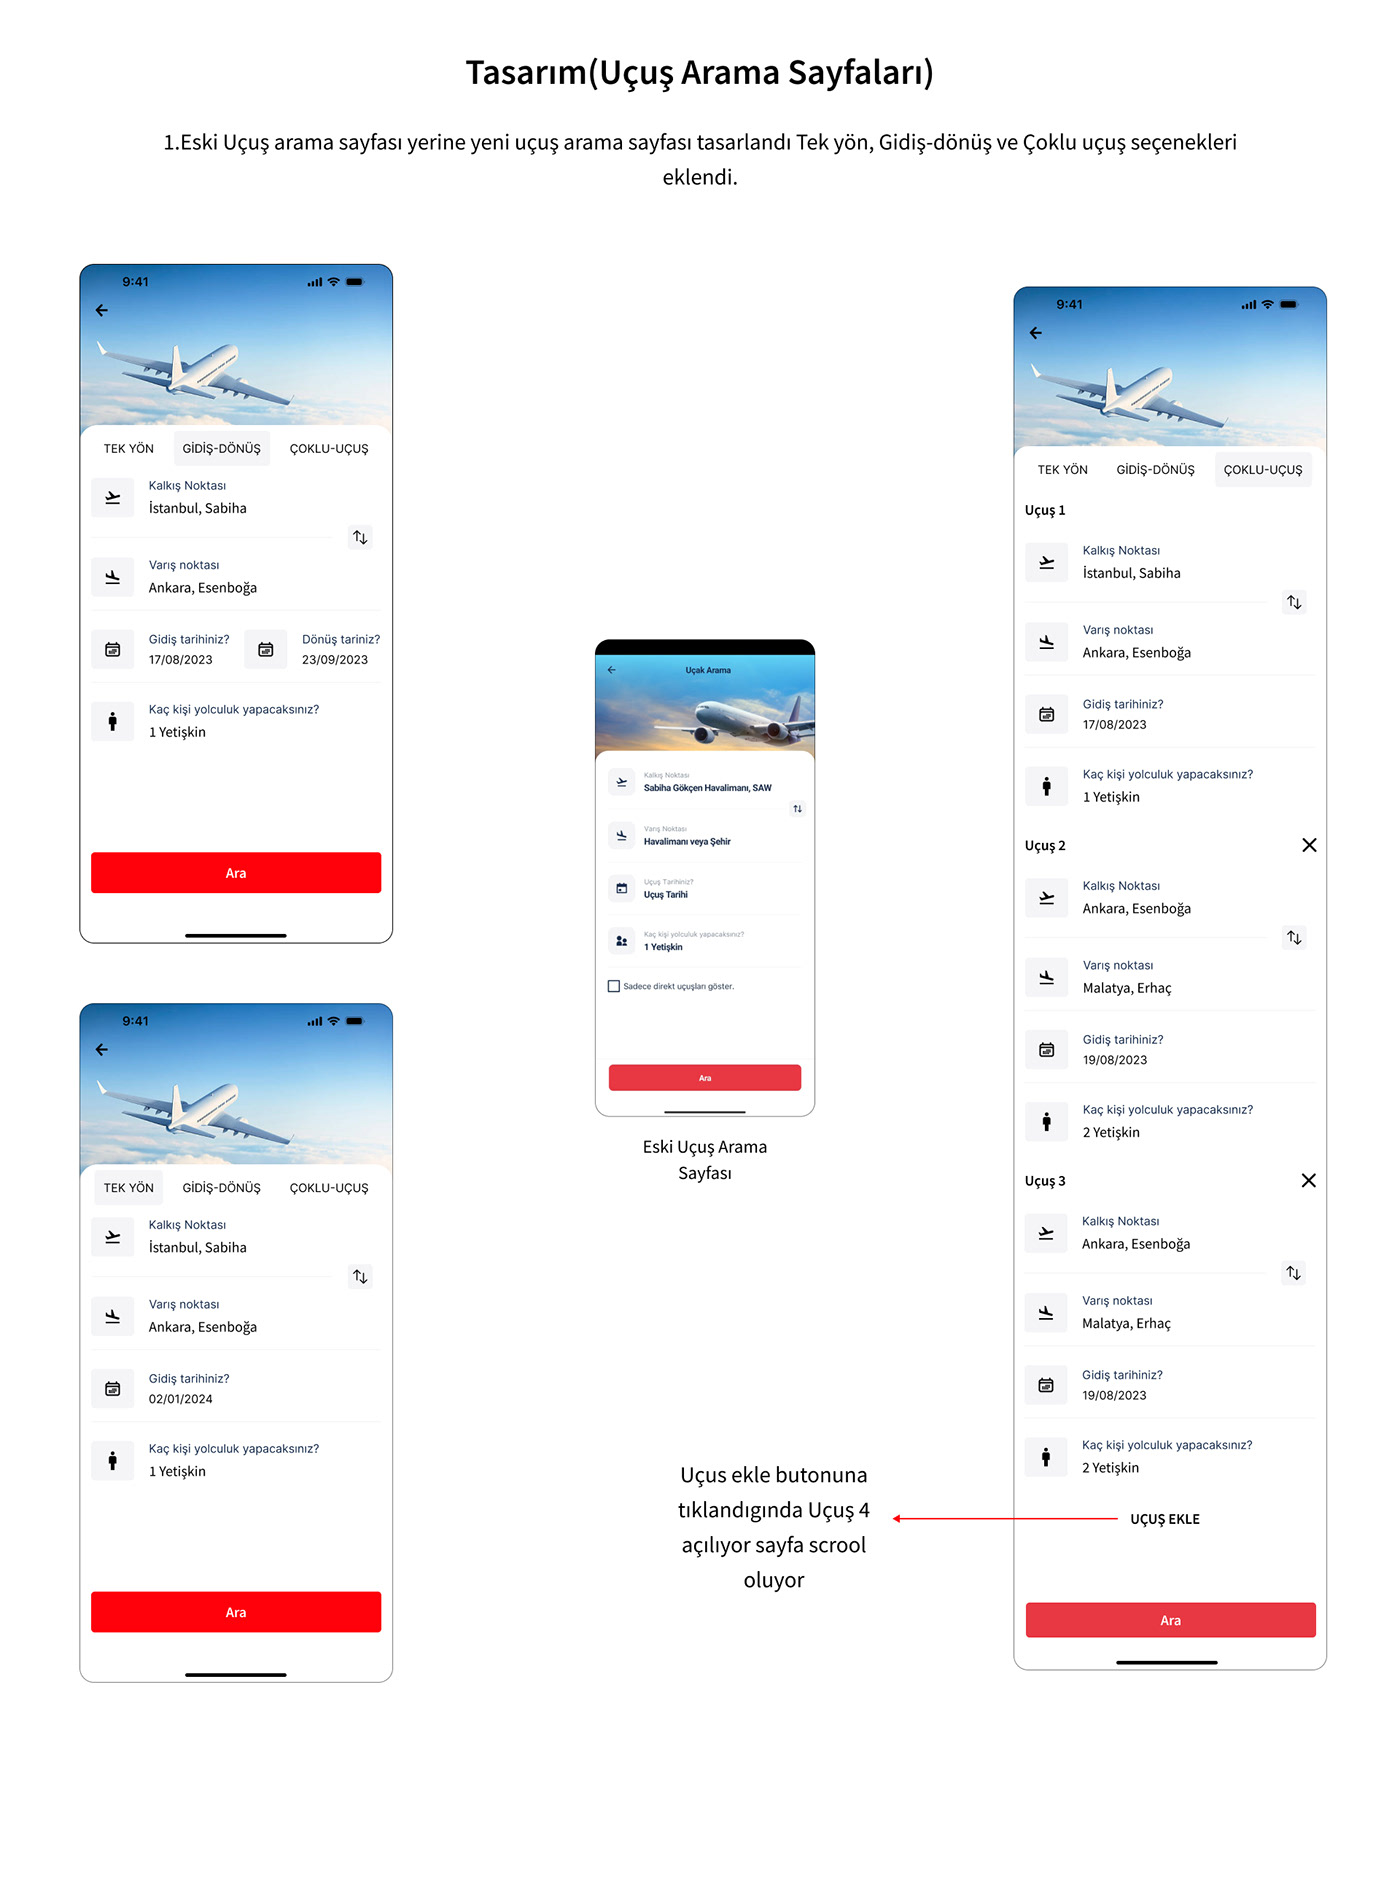 Figma ui design UI/UX Mobile app Case Study user interface UX design ux/ui user experience app design